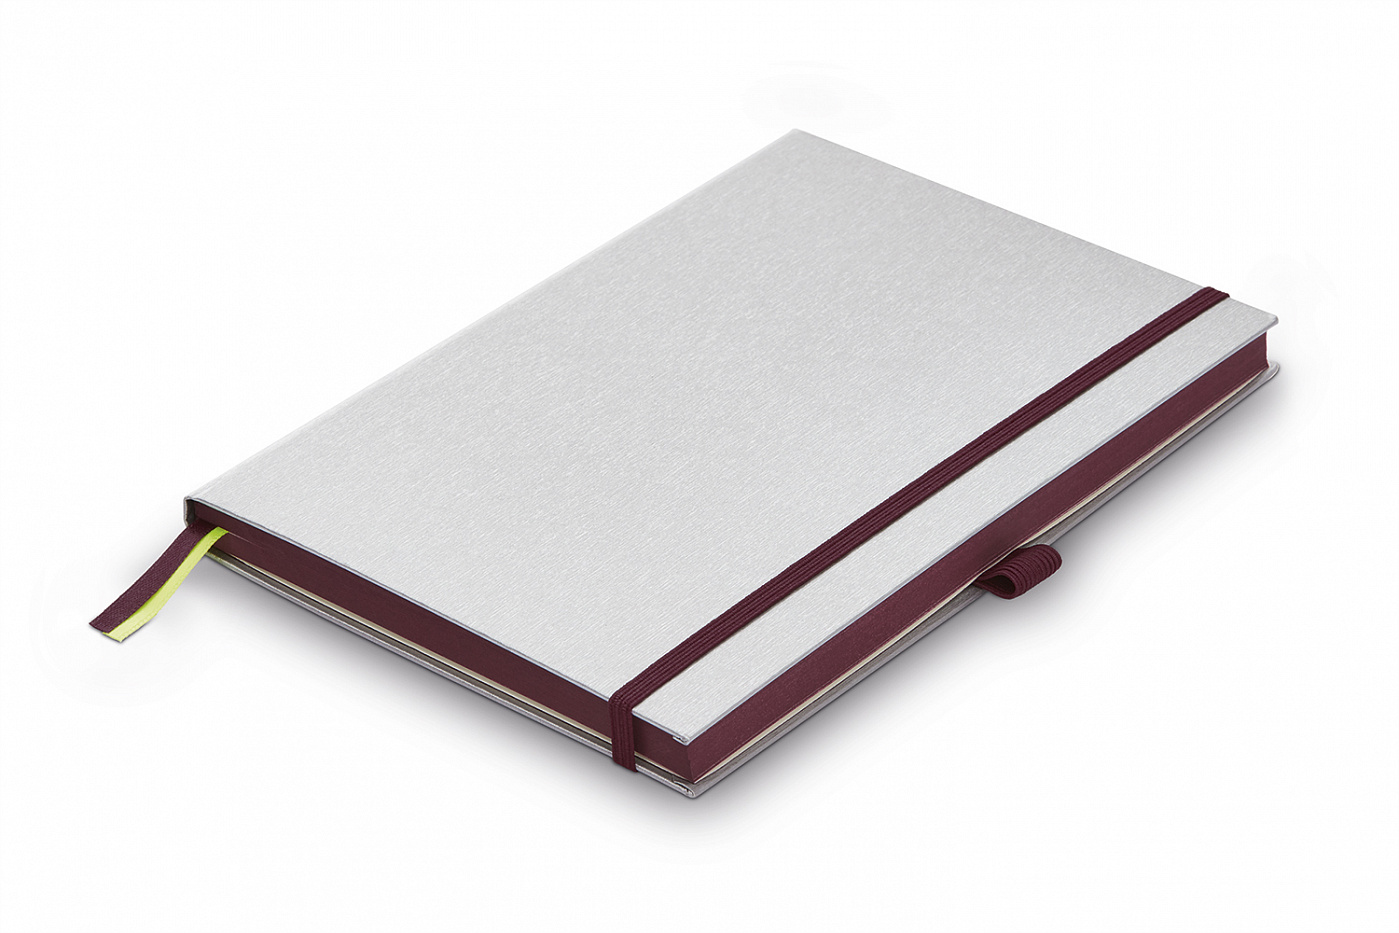 Записная книжка LAMY А6 192 стр, жесткая обложка серебристого цвета, обрез пурпурный пурпурный